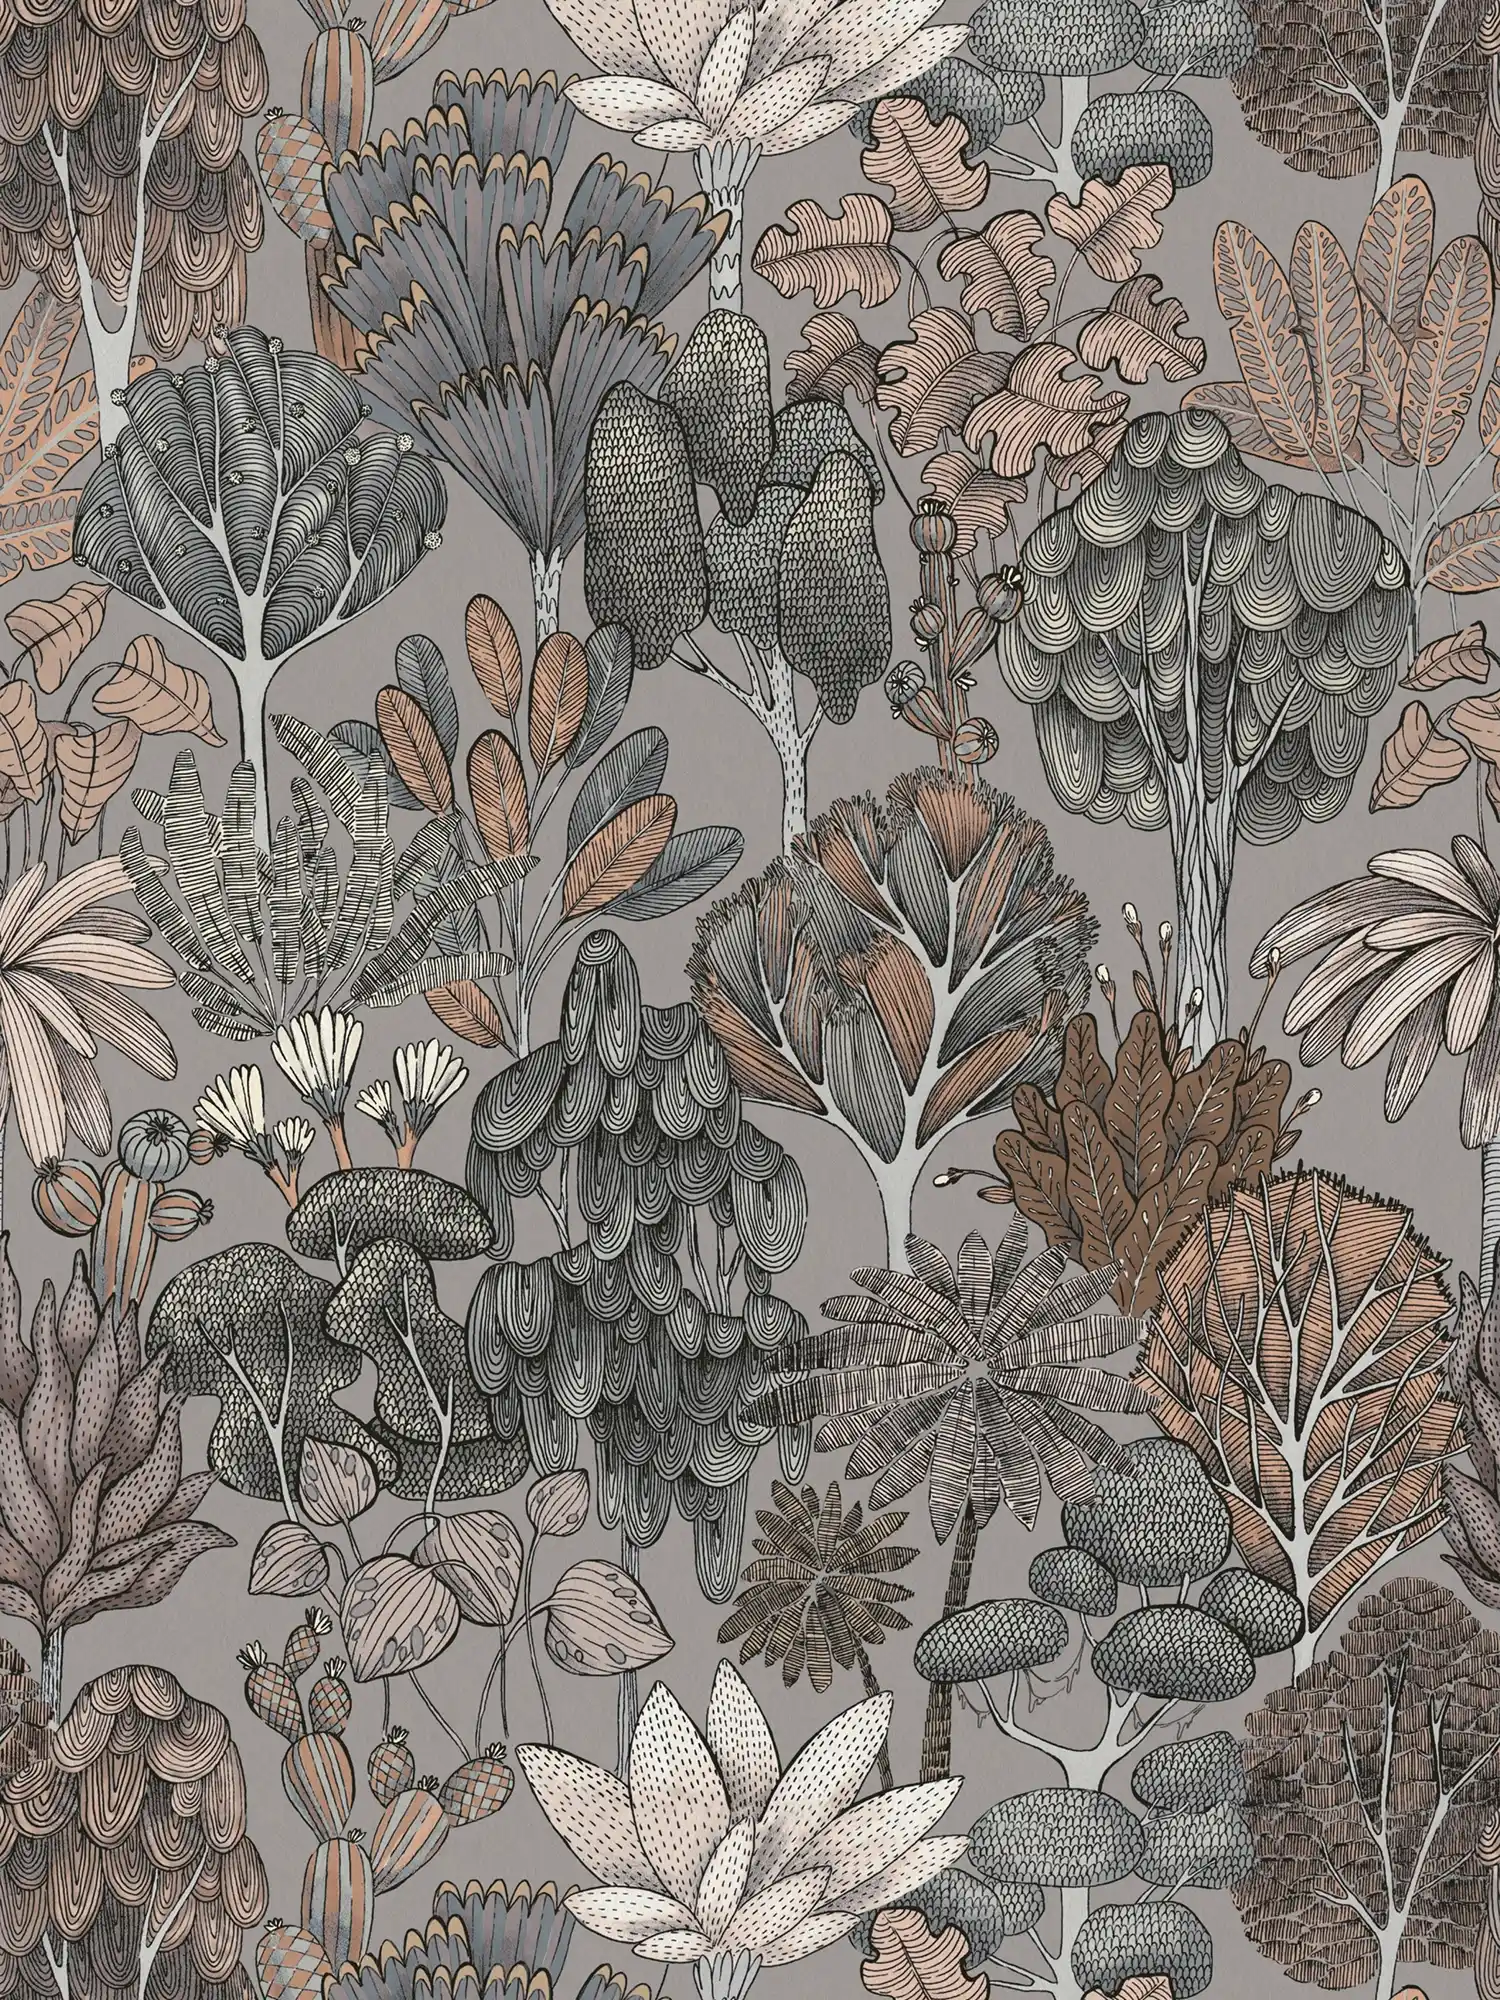         Tapete Grau Beige mit floralem Muster im Doodle Look – Grau, Beige, Orange
    